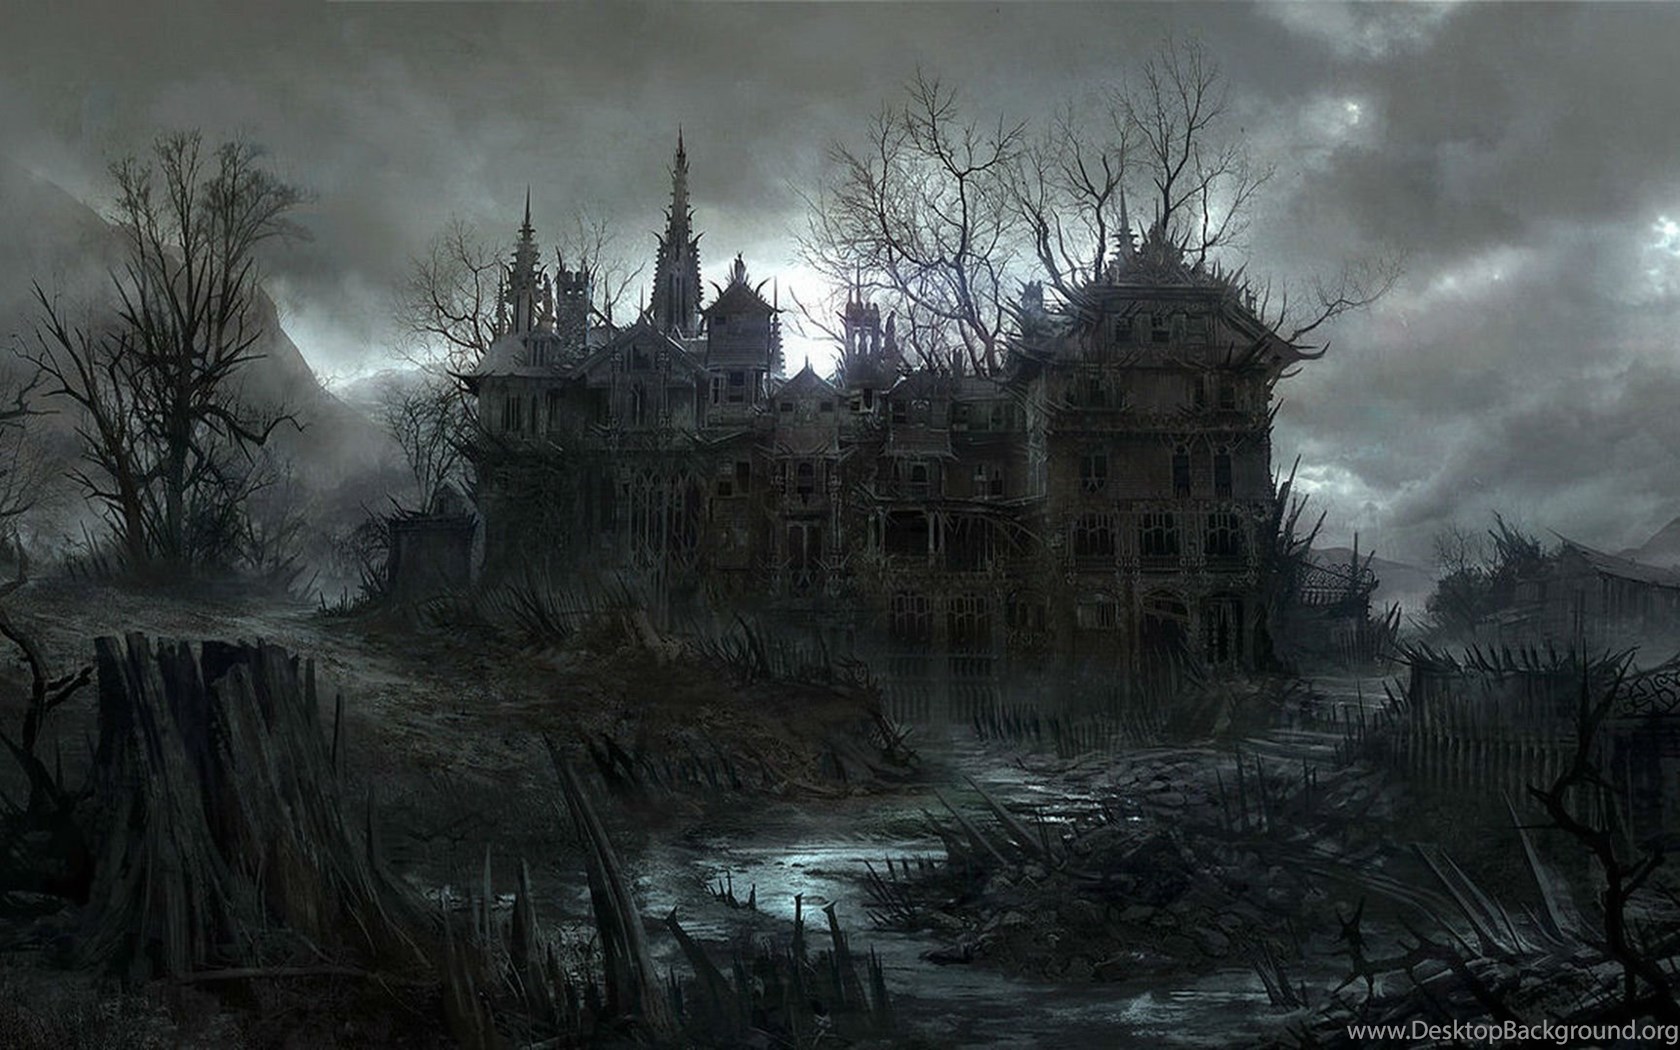 HALLOWEEN Dark Haunted House Spooky Wallpaper Desktop Background